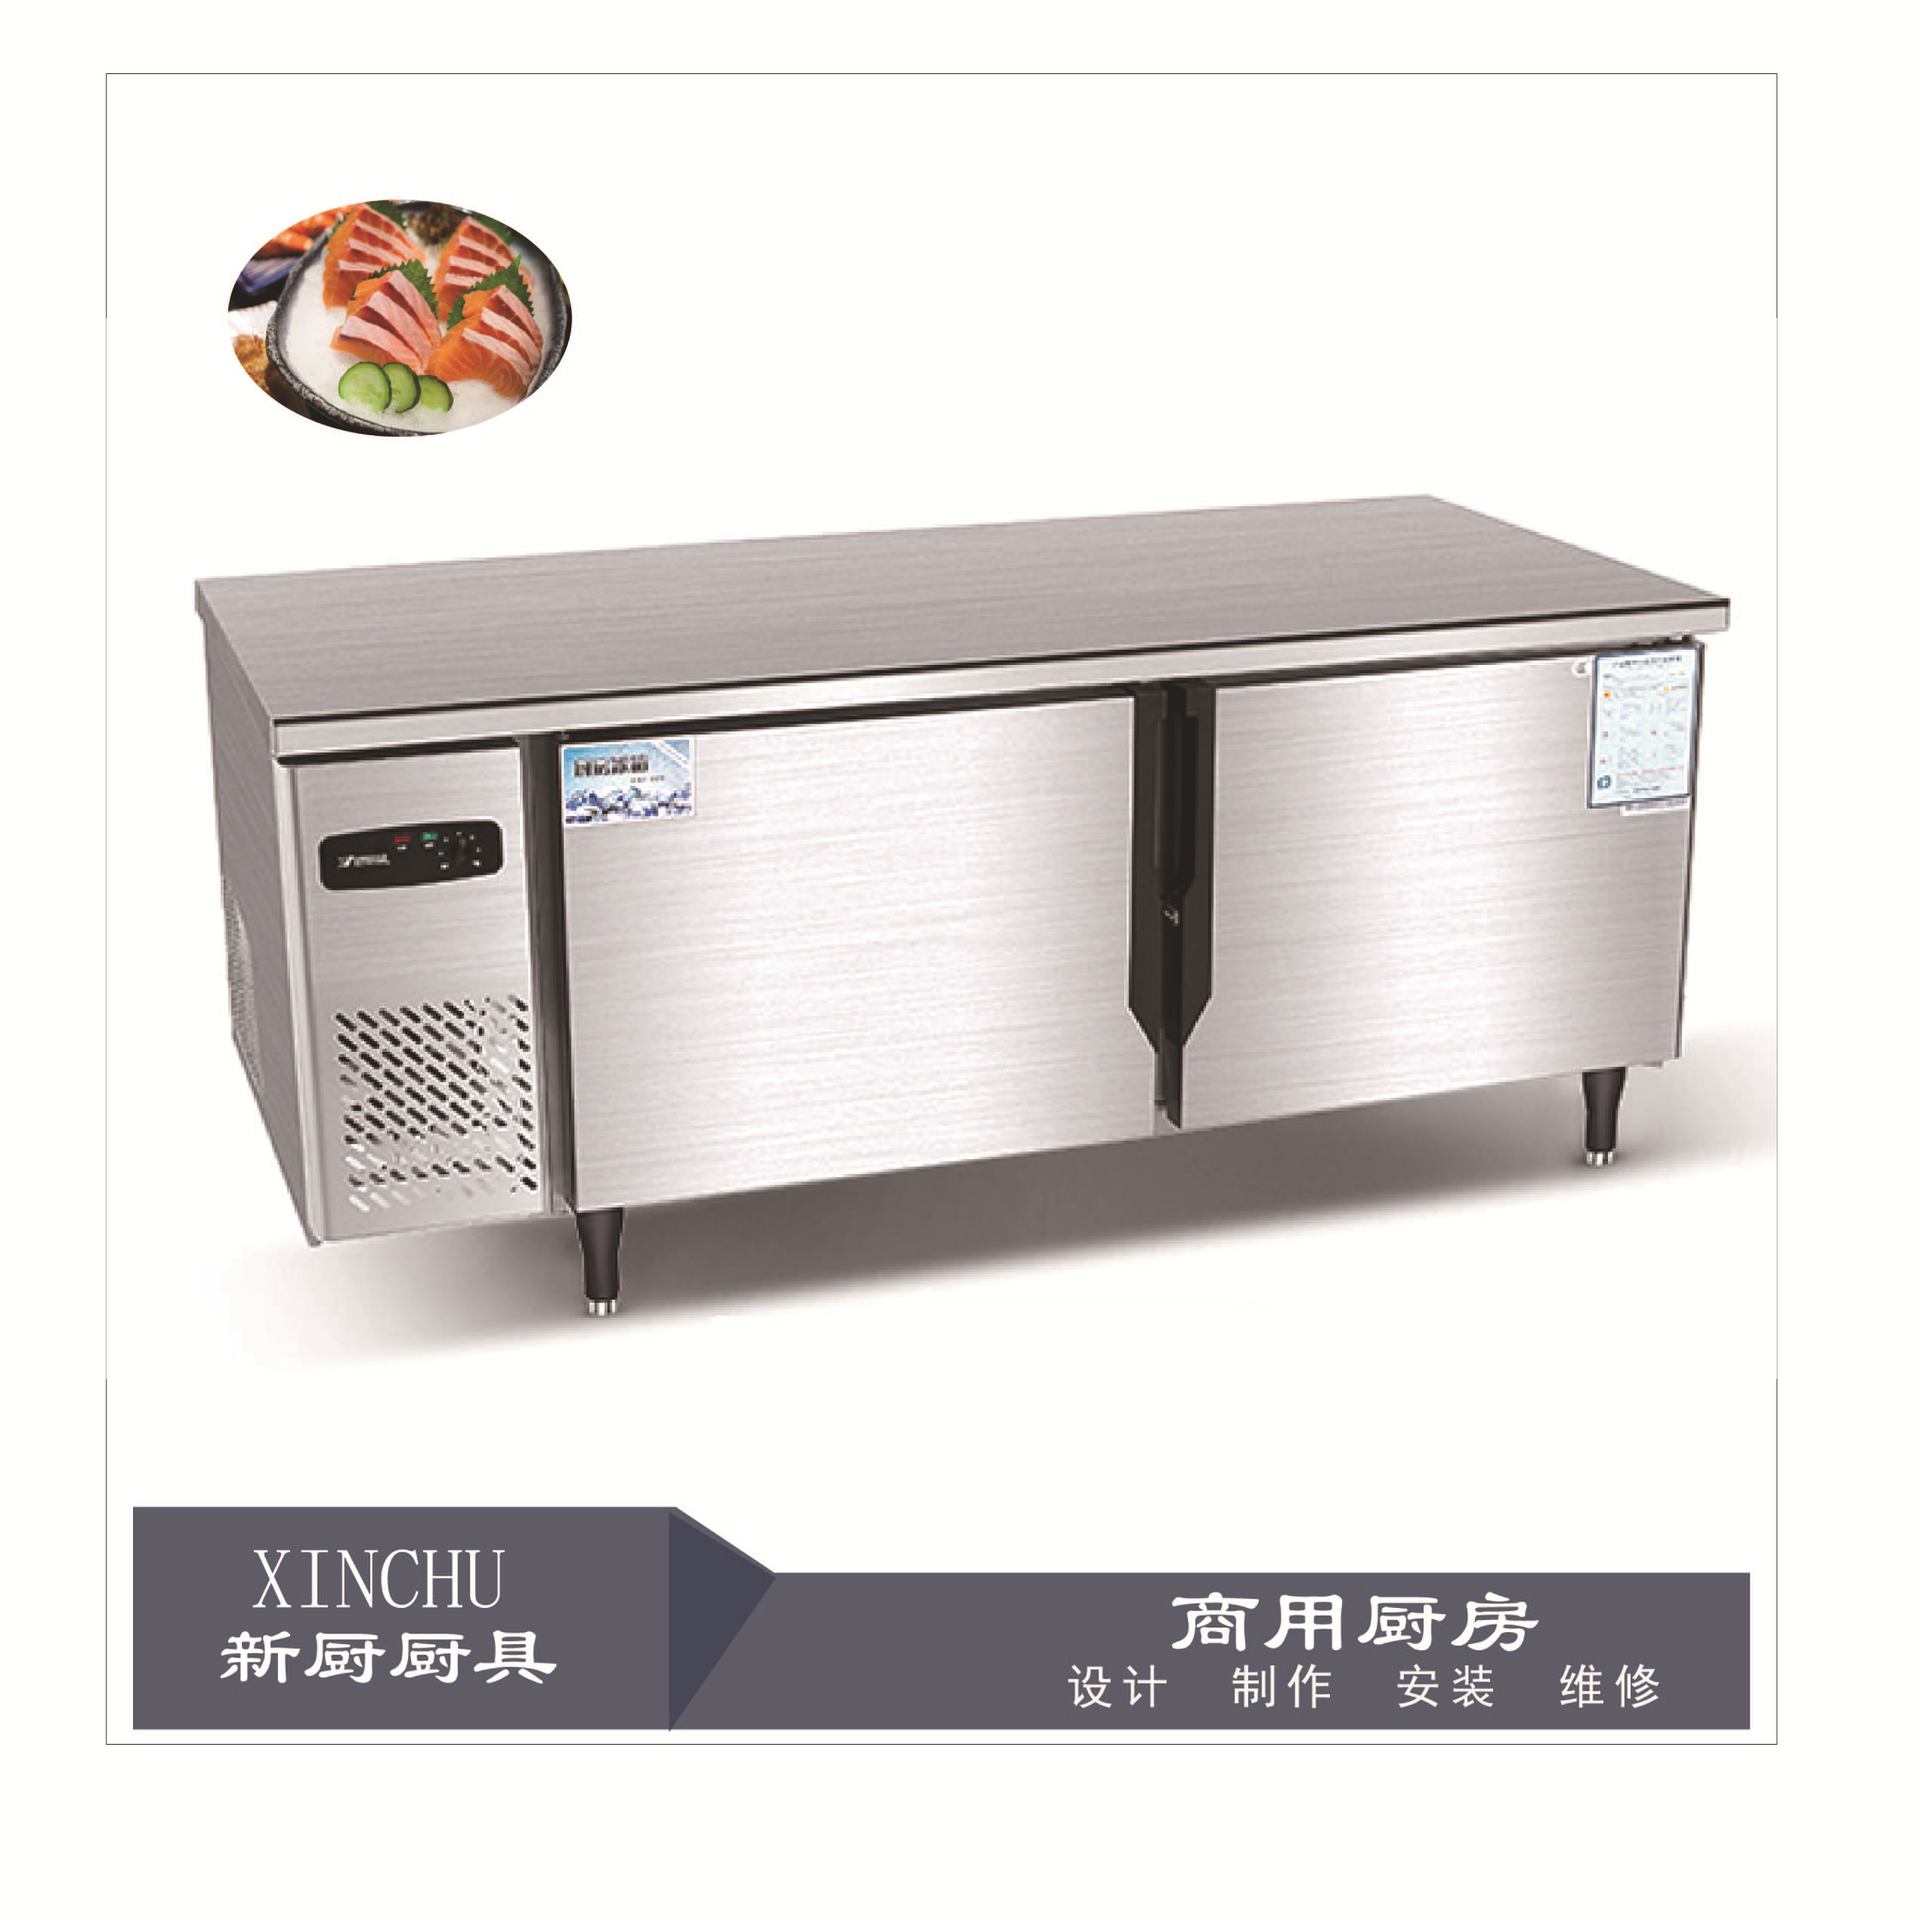 银都1.5/1.8米工作台冷藏冷冻冰箱商用厨房设备保鲜冰柜爱雪制冷